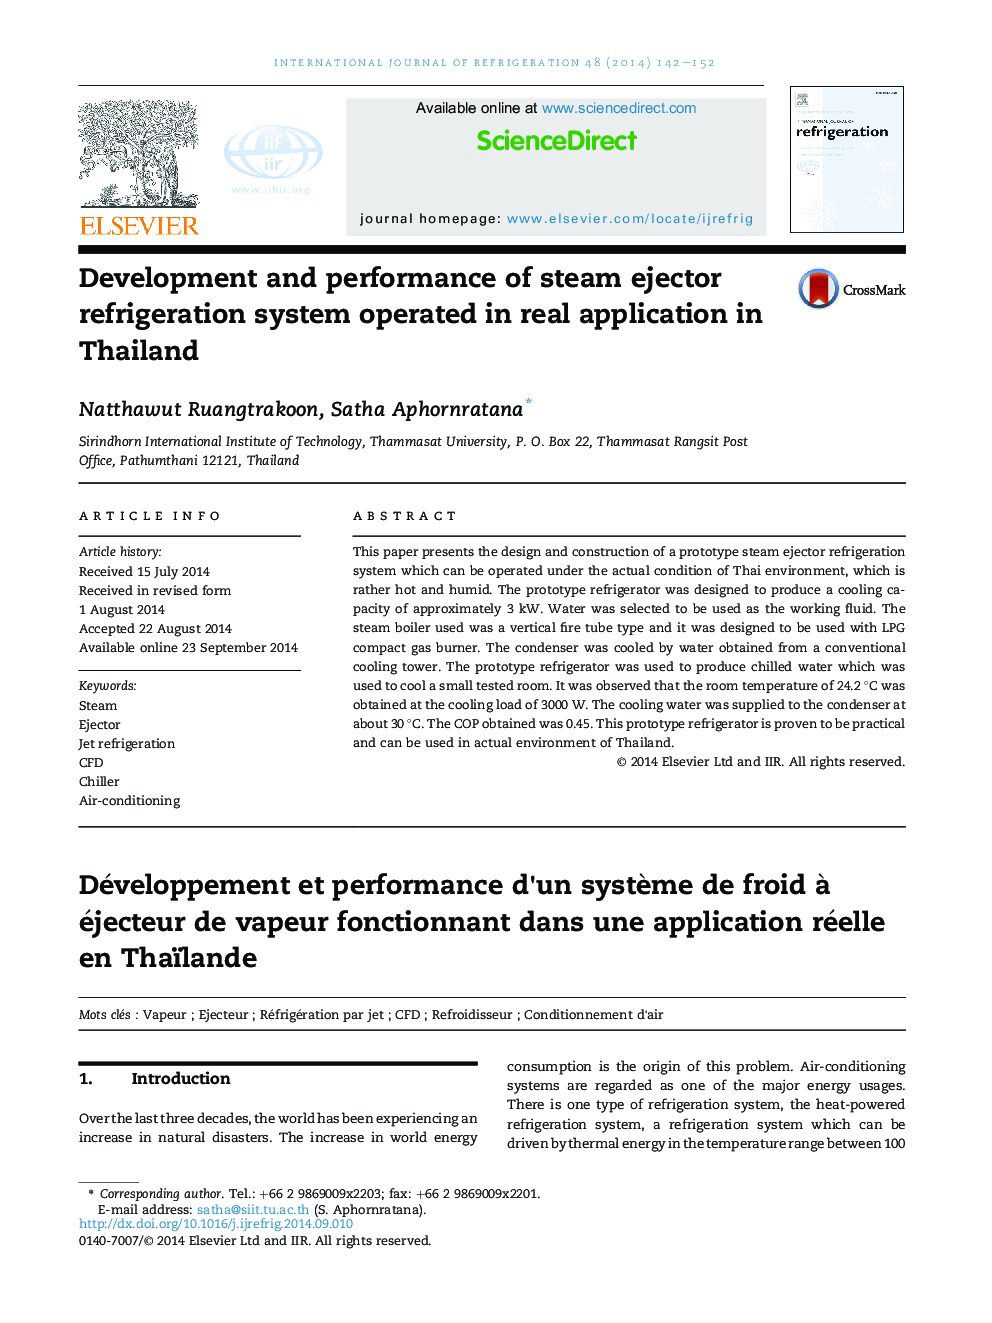 توسعه و عملکرد سیستم تبرید بخار در کاربرد واقعی در تایلند عمل می کند 